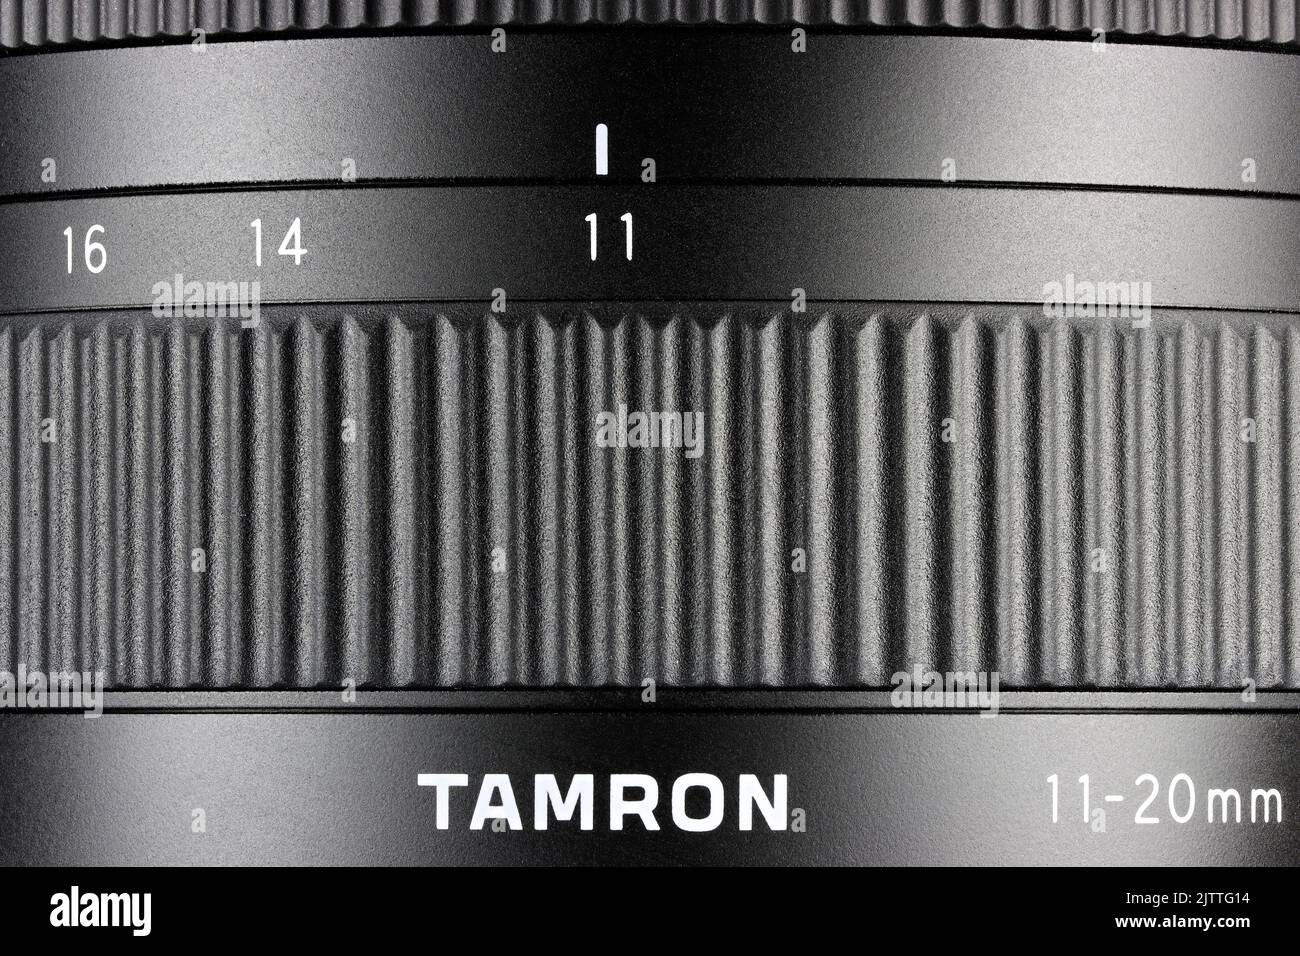 Obiettivo zoom ultra-grandangolare Tamron 11-20mm F/2,8 di III-A RXD con lunghezza focale di 11 mm Foto Stock